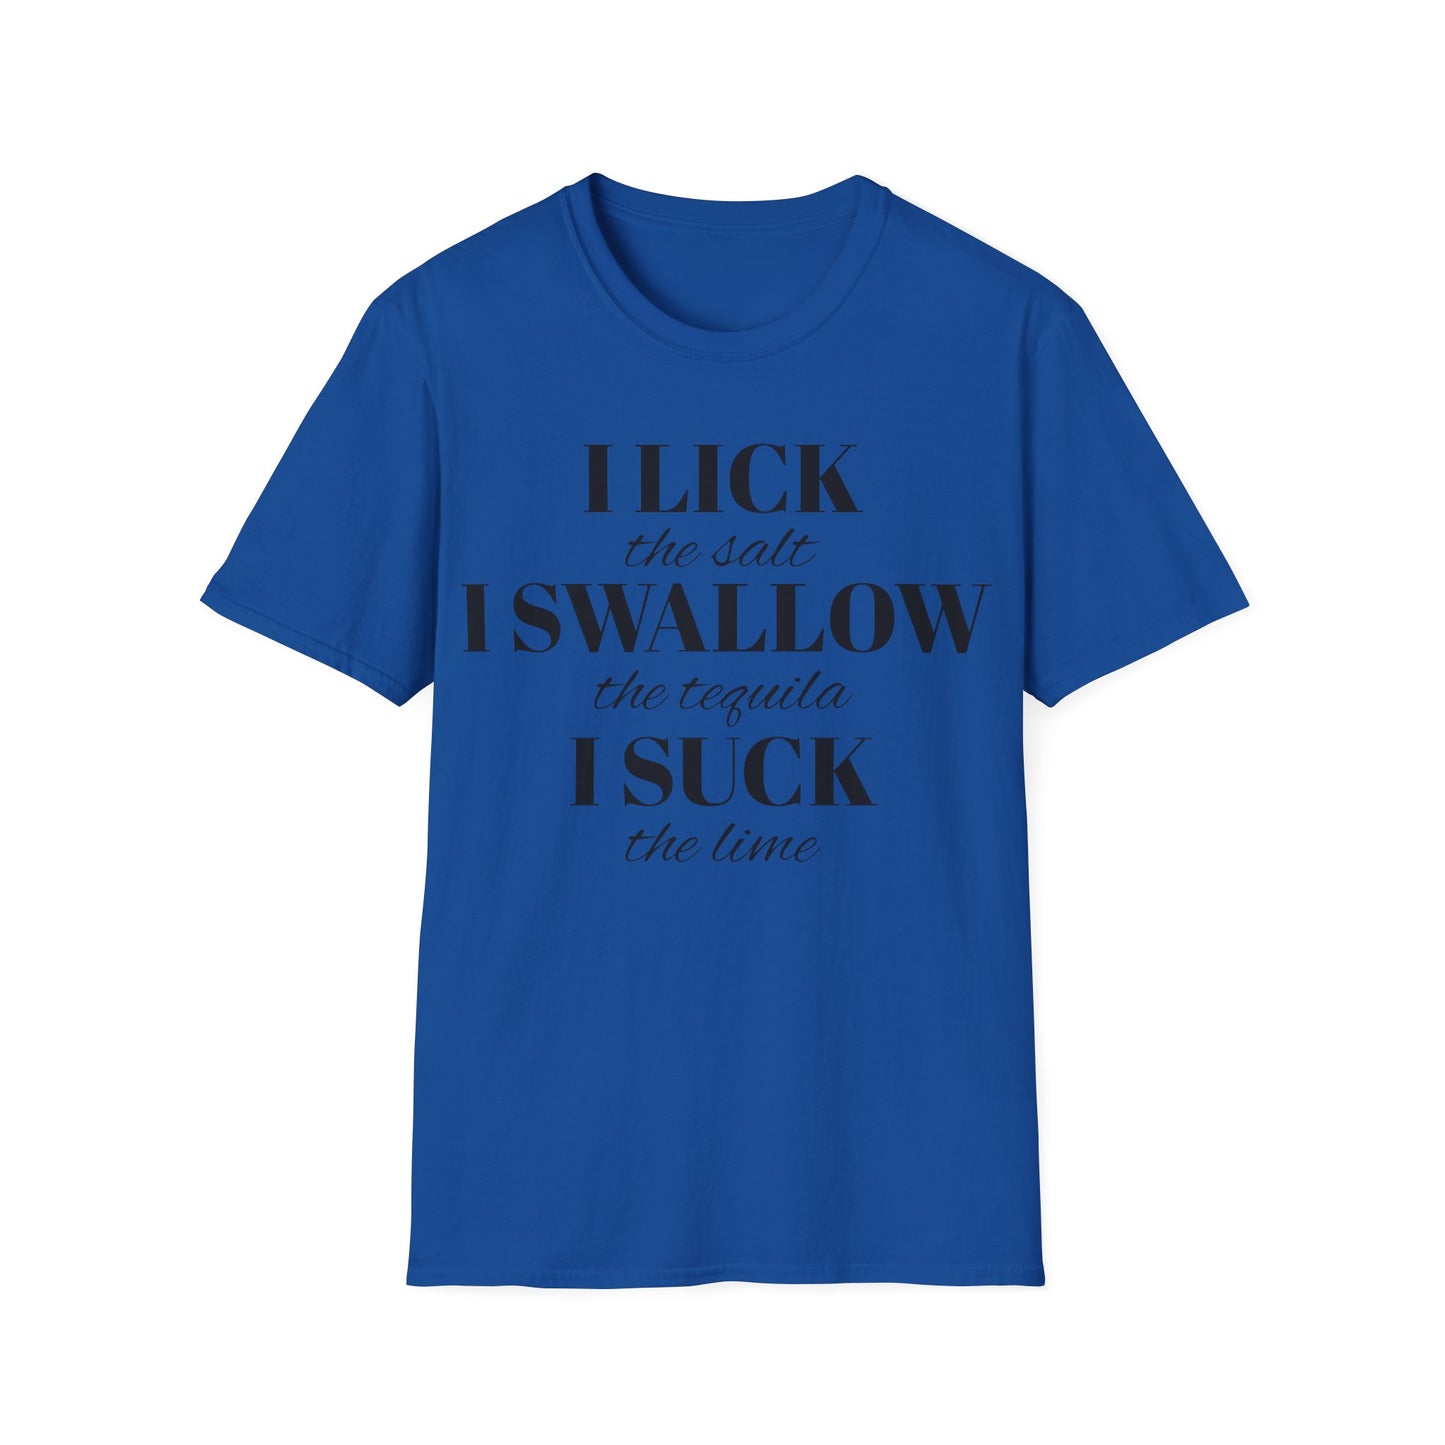 I Lick I Swallow I Suck Drinking Shirt - Unisex Softstyle T-Shirt